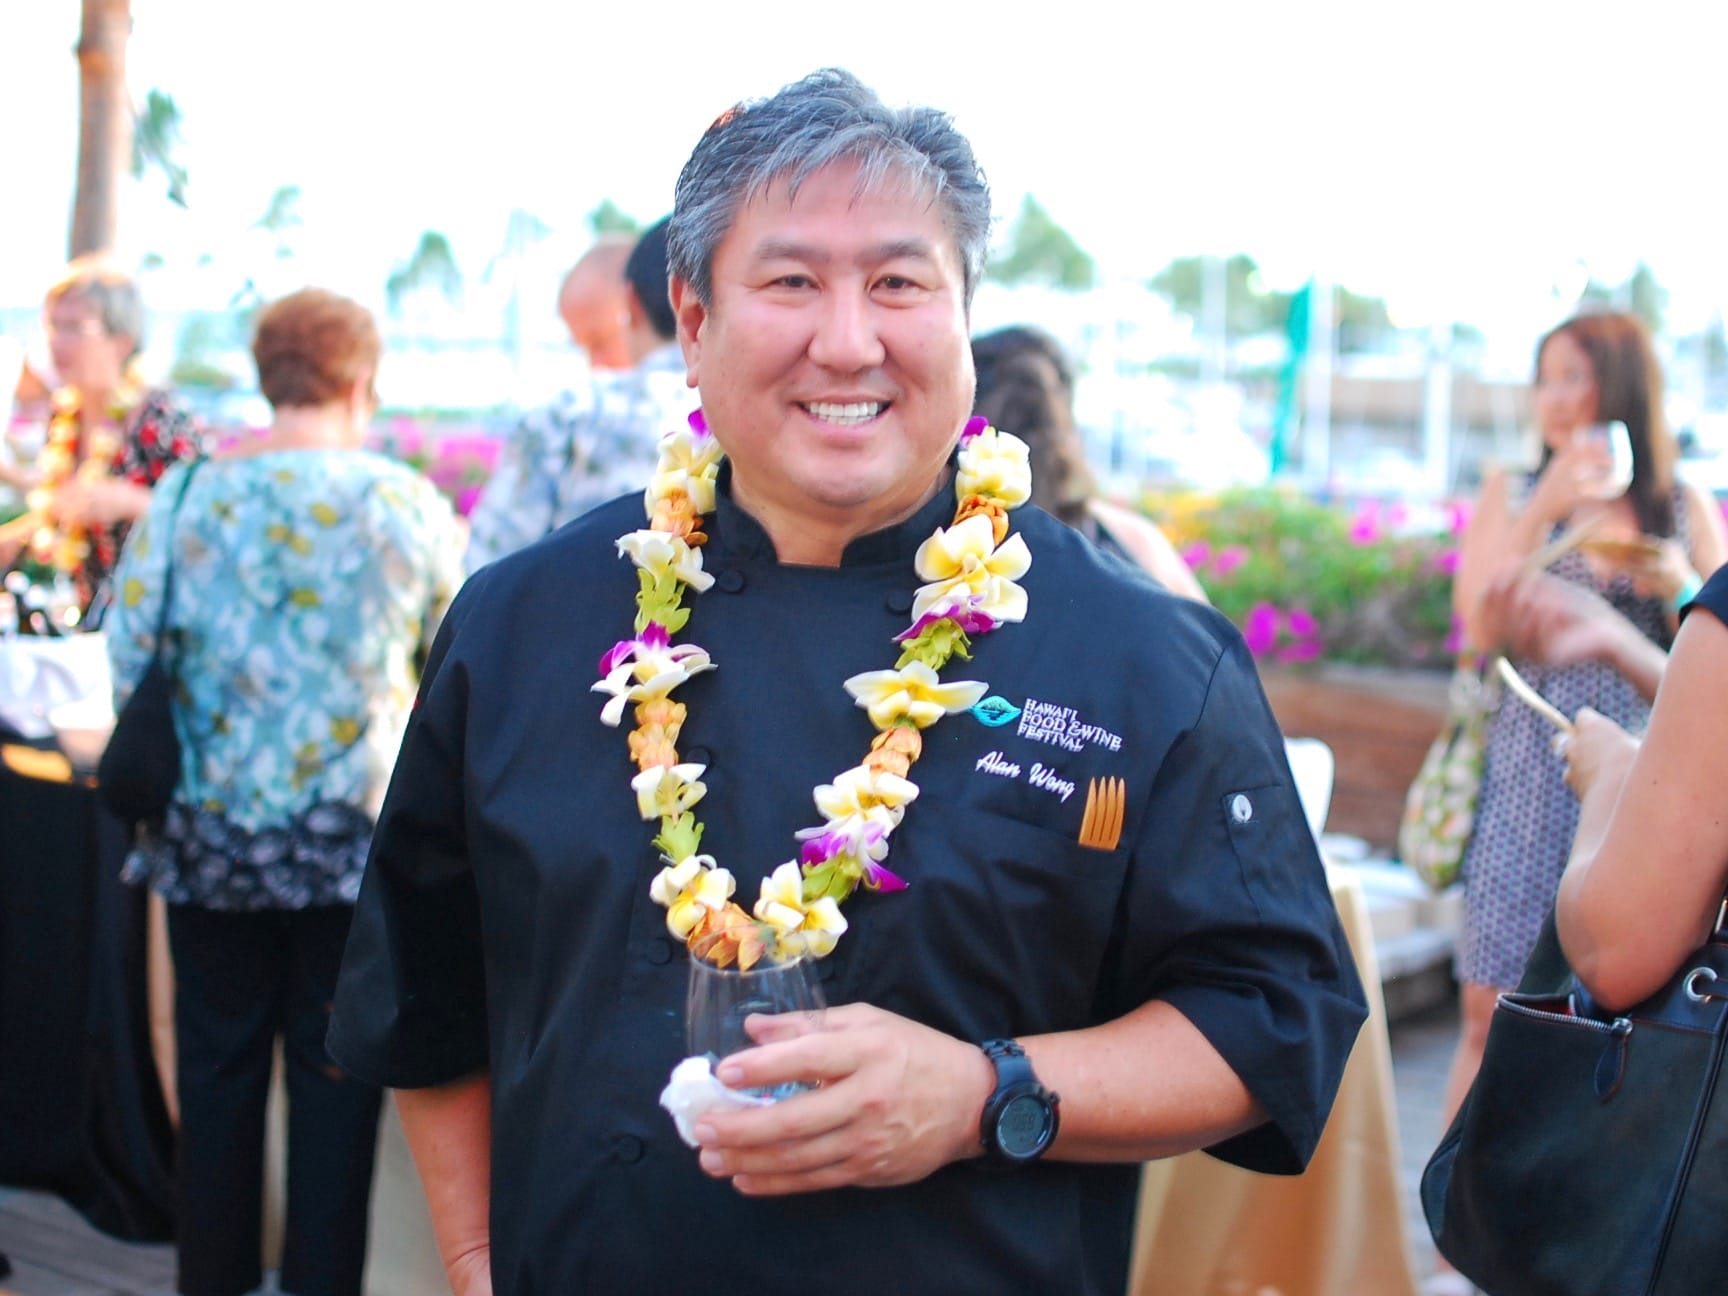 Chef Hawaii